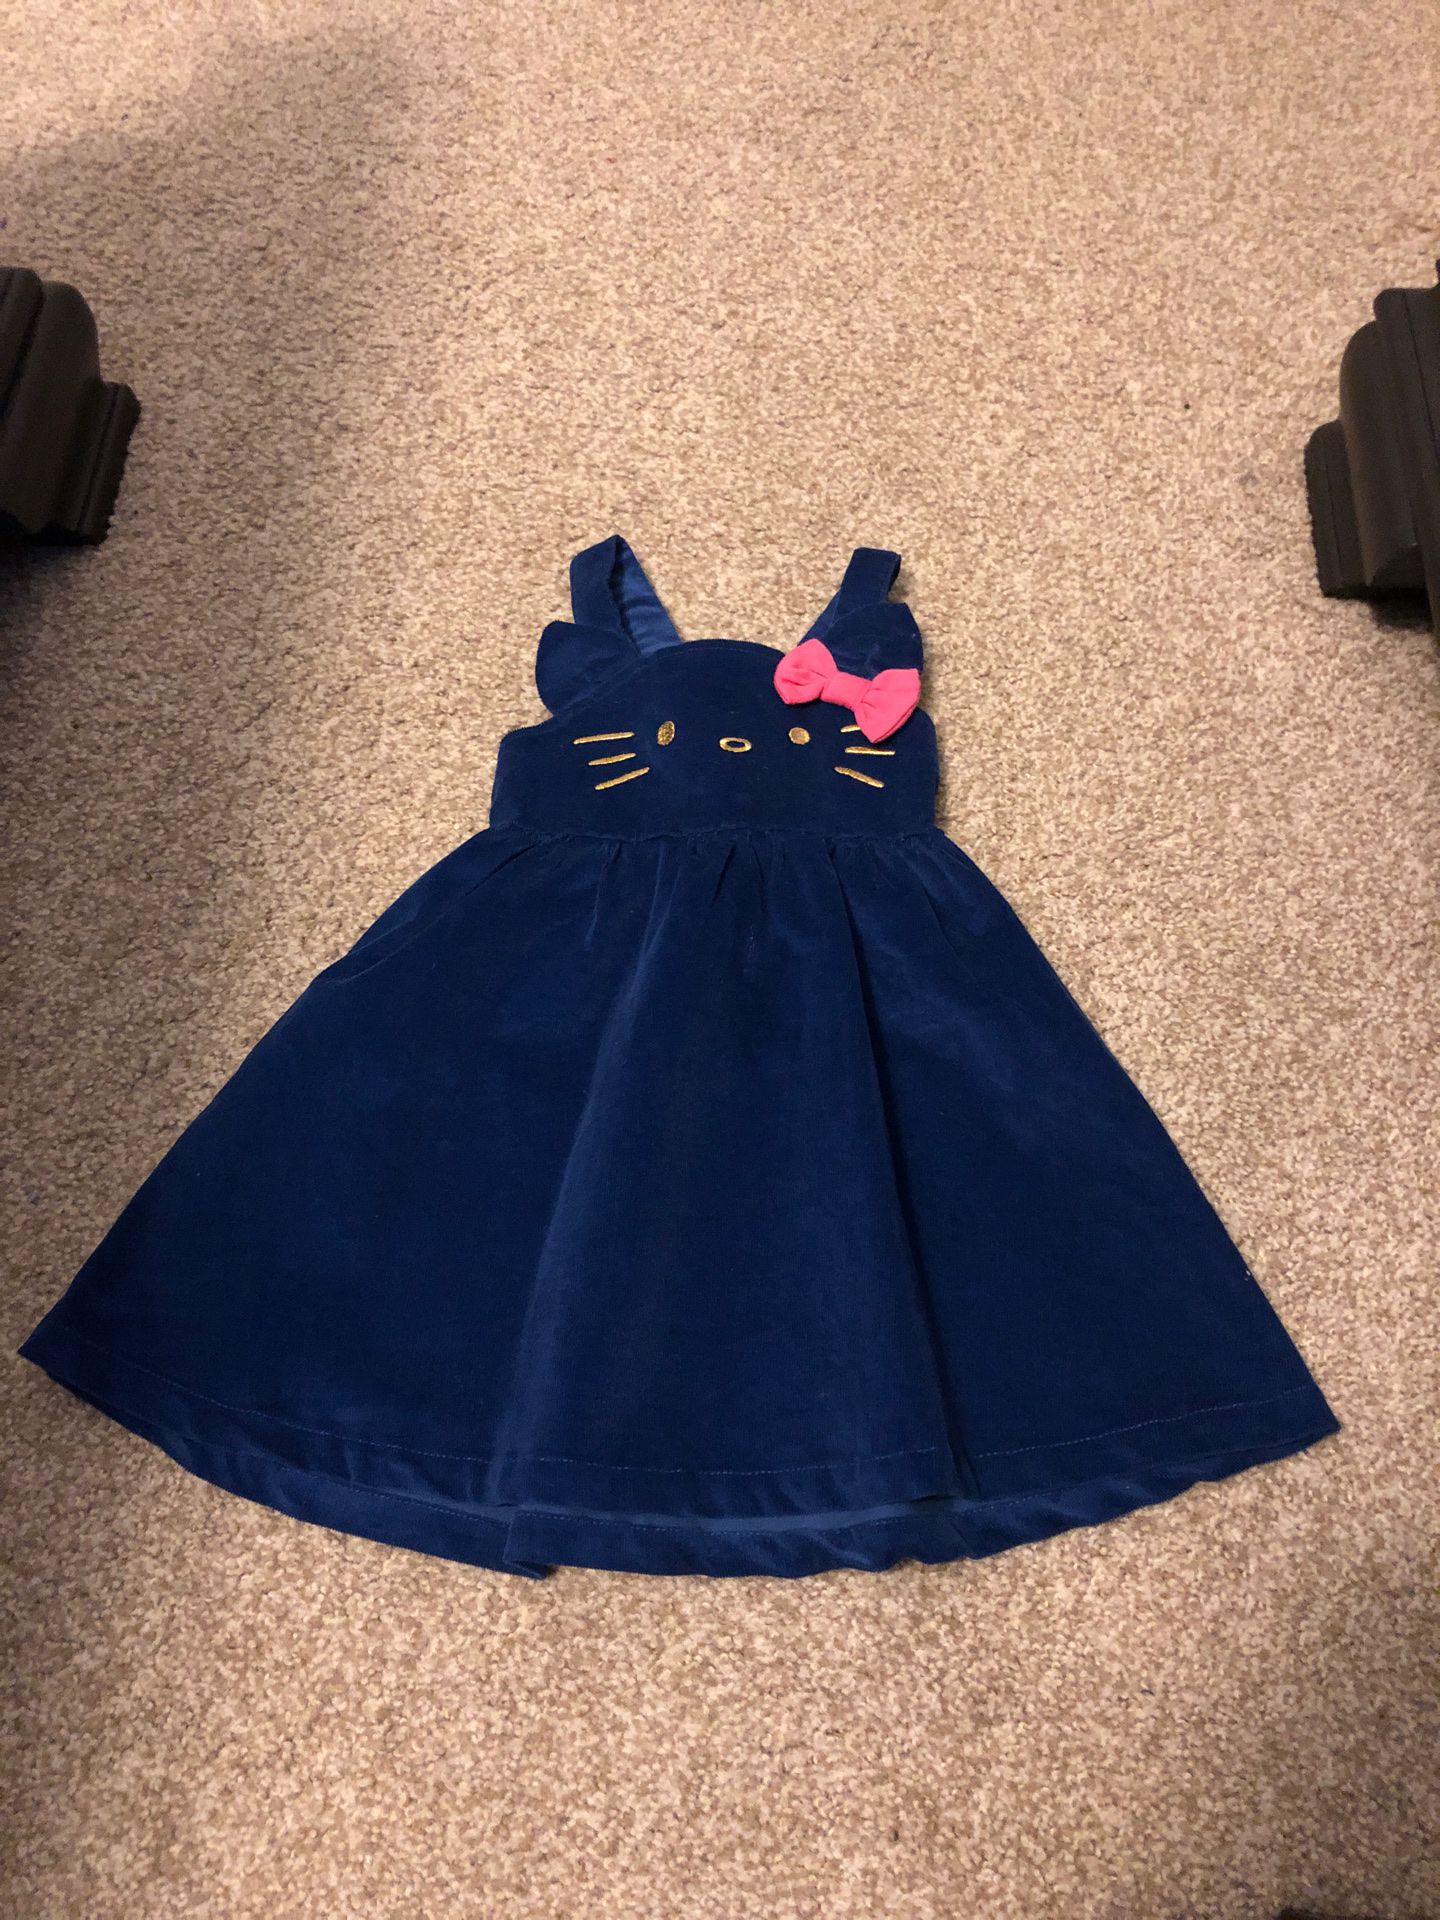 Hello Kitty toddler girl 3t size 3 velveteen blue jumper dress